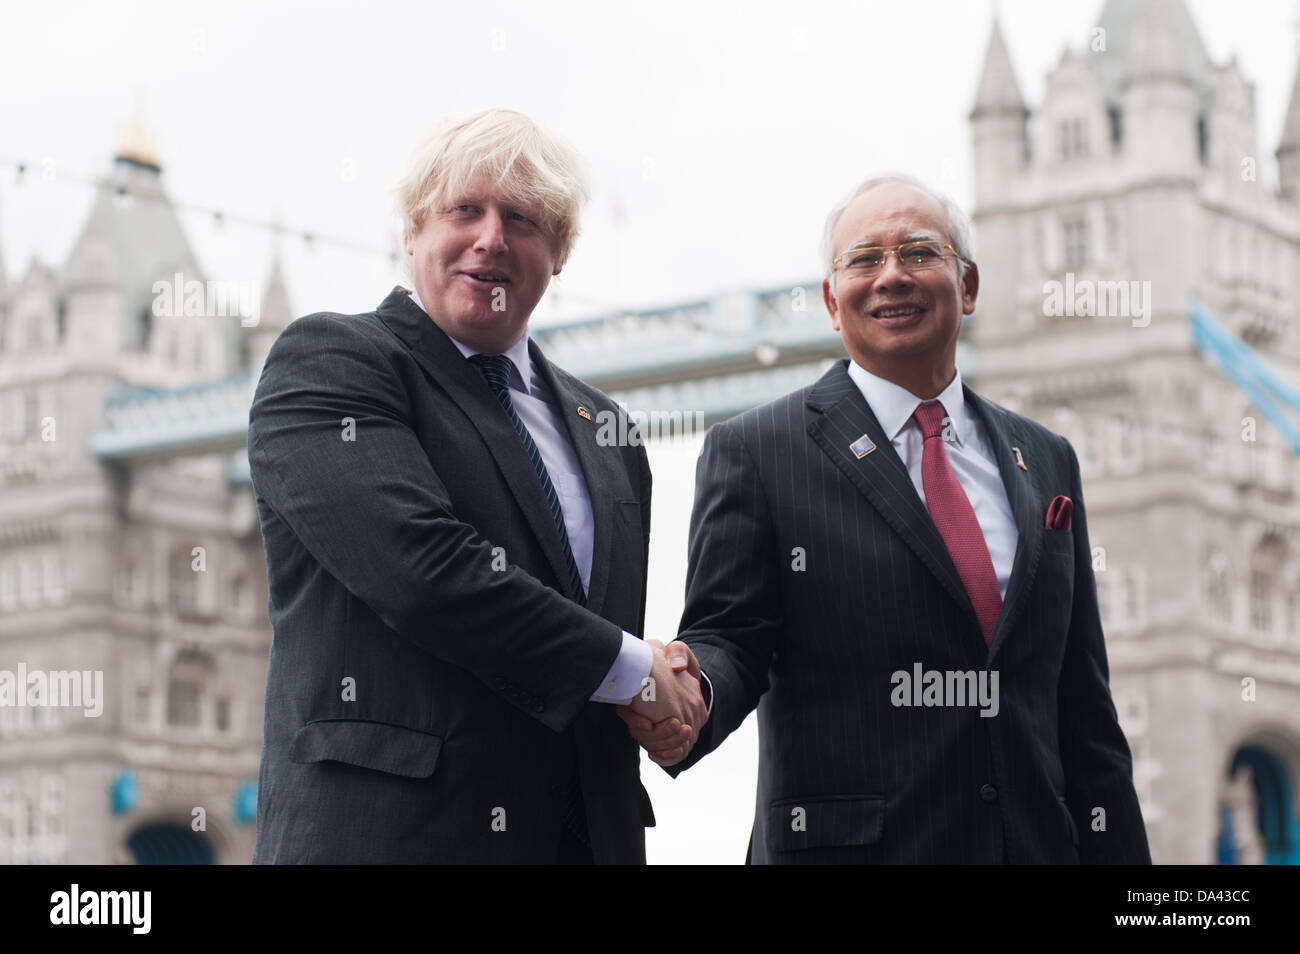 Londres, Reino Unido - 3 de julio de 2013: El Primer Ministro de Malasia, el Honorable Dato' Sri Mohd Najib Tun Abdul Razak, y el alcalde de Londres, Boris Johnson, agitar las manos antes de la reunión para el lanzamiento del 9º Foro Económico Islámico Mundial. Crédito: Piero Cruciatti/Alamy Live News Foto de stock